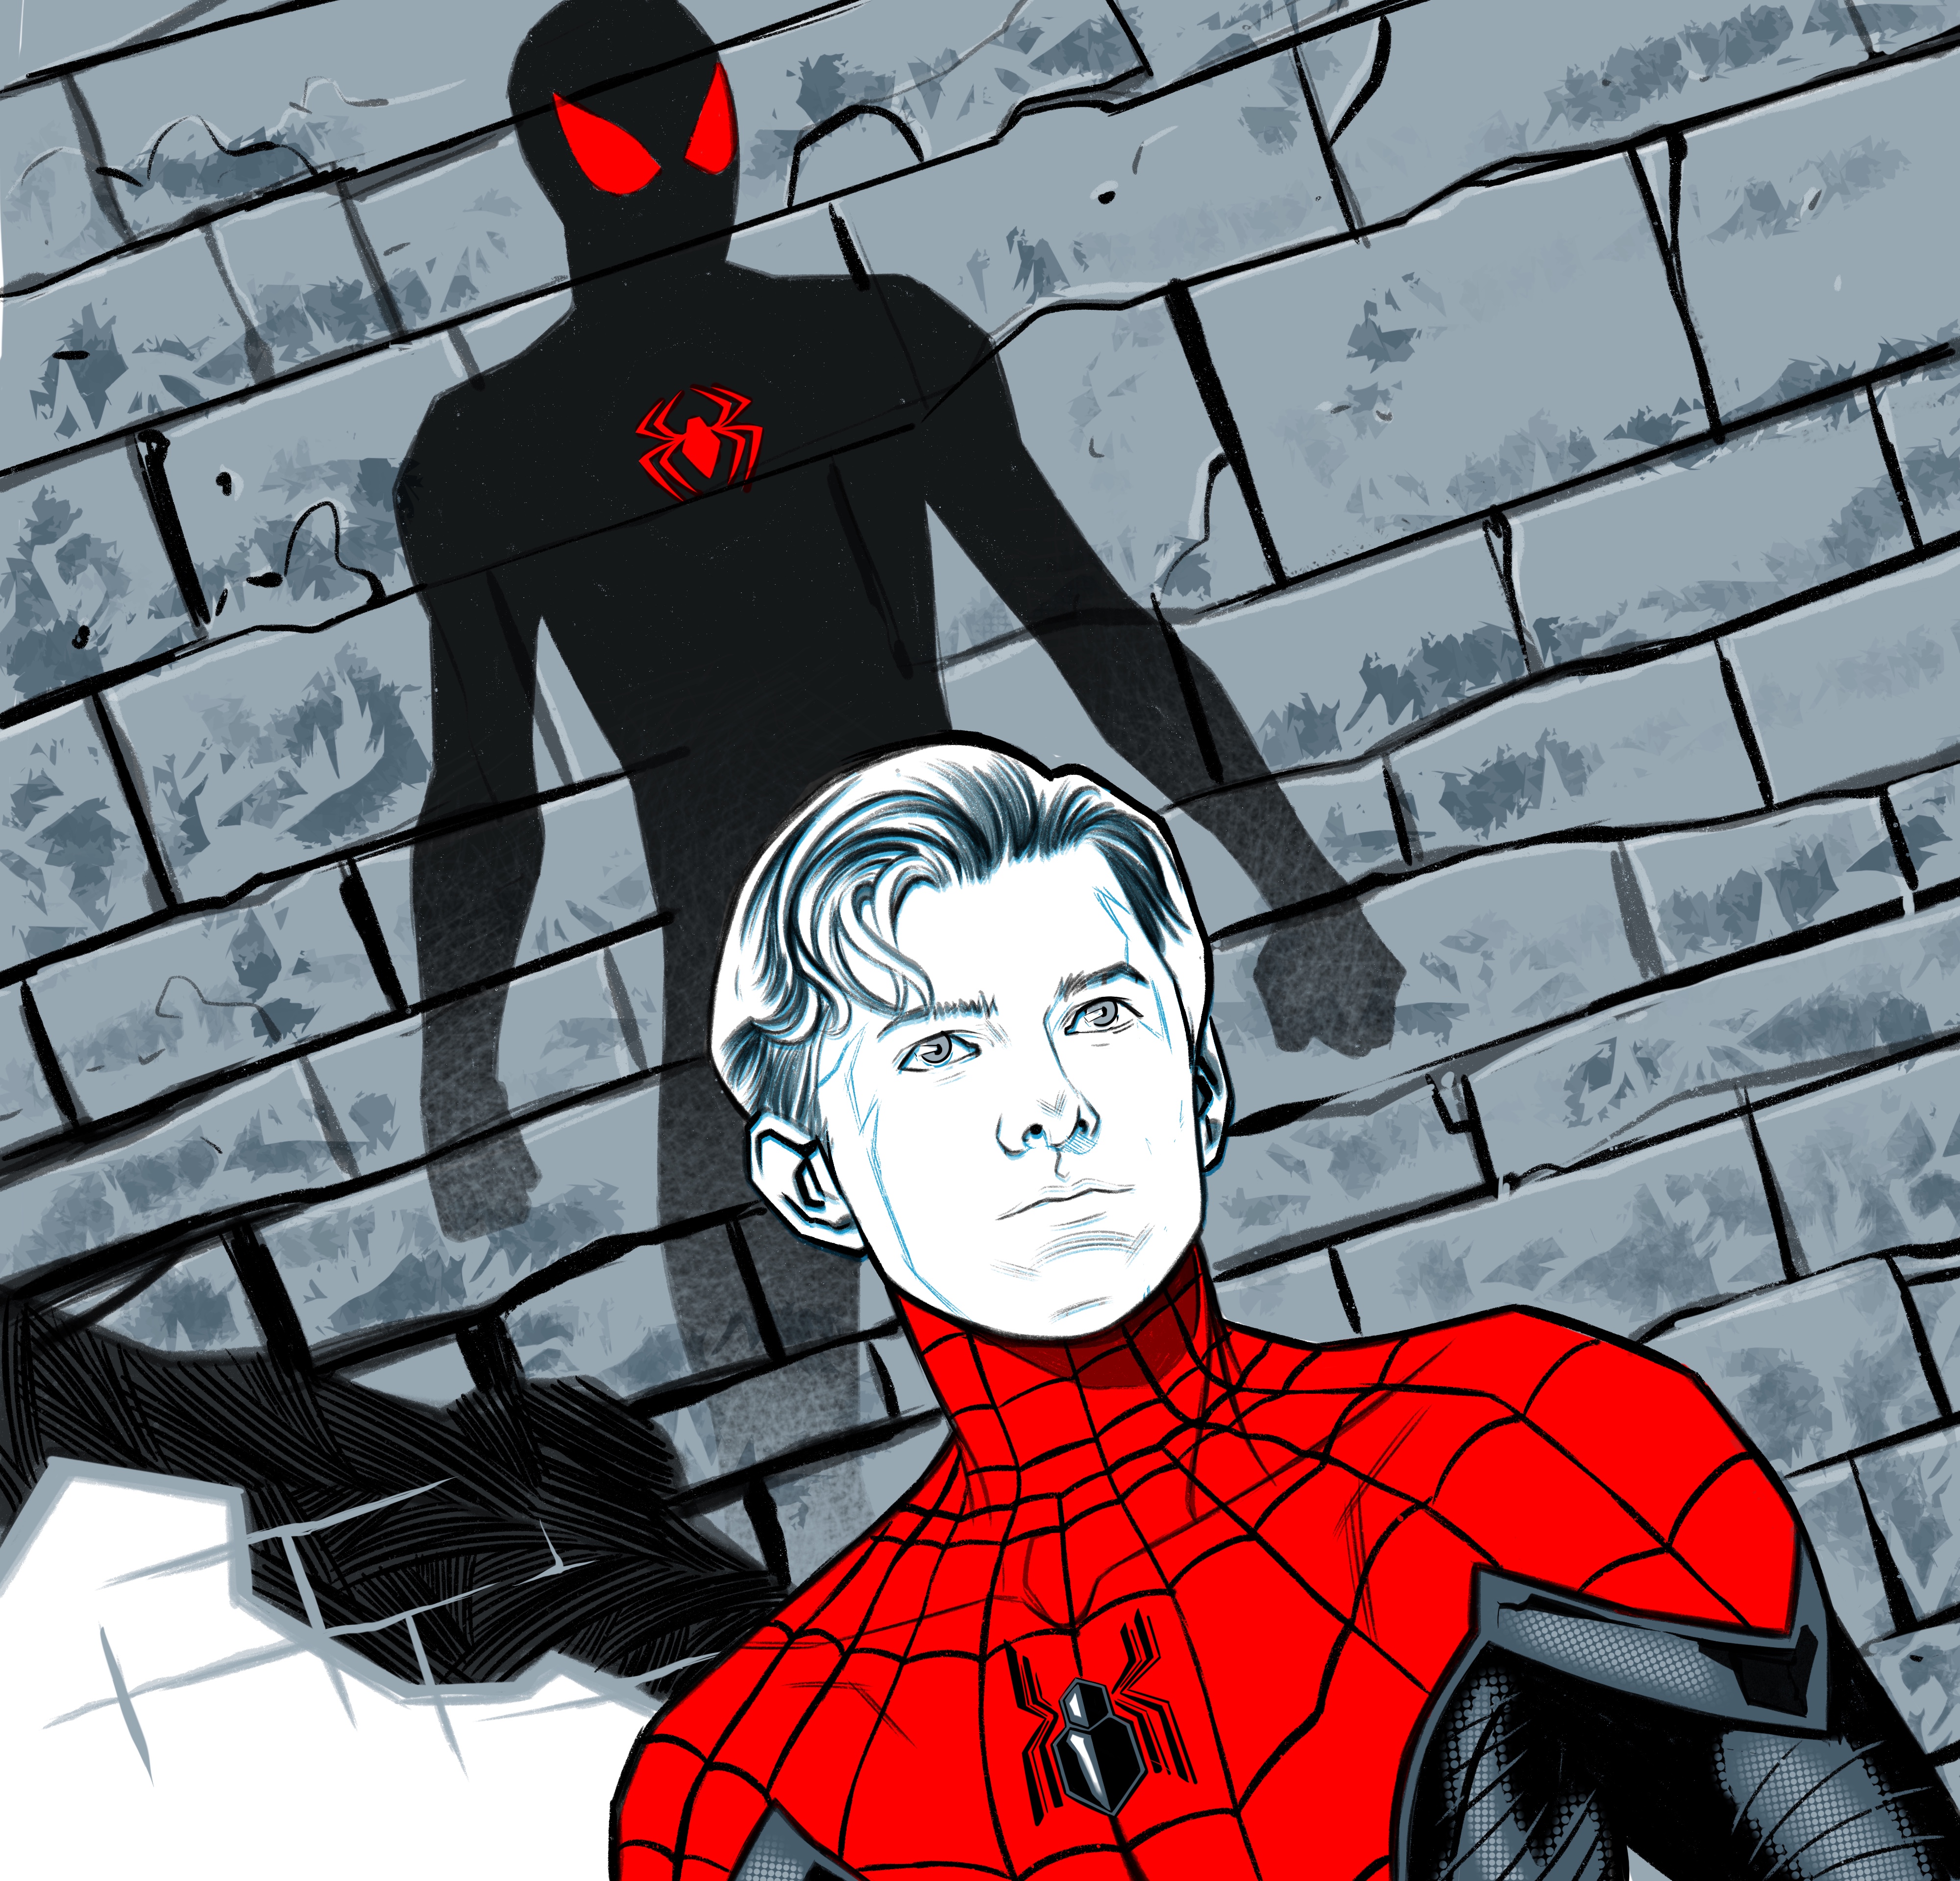 tom holland è ritratto da david messina mentre proietta la sua ombra a forma di spider-man sul muro - nerdface